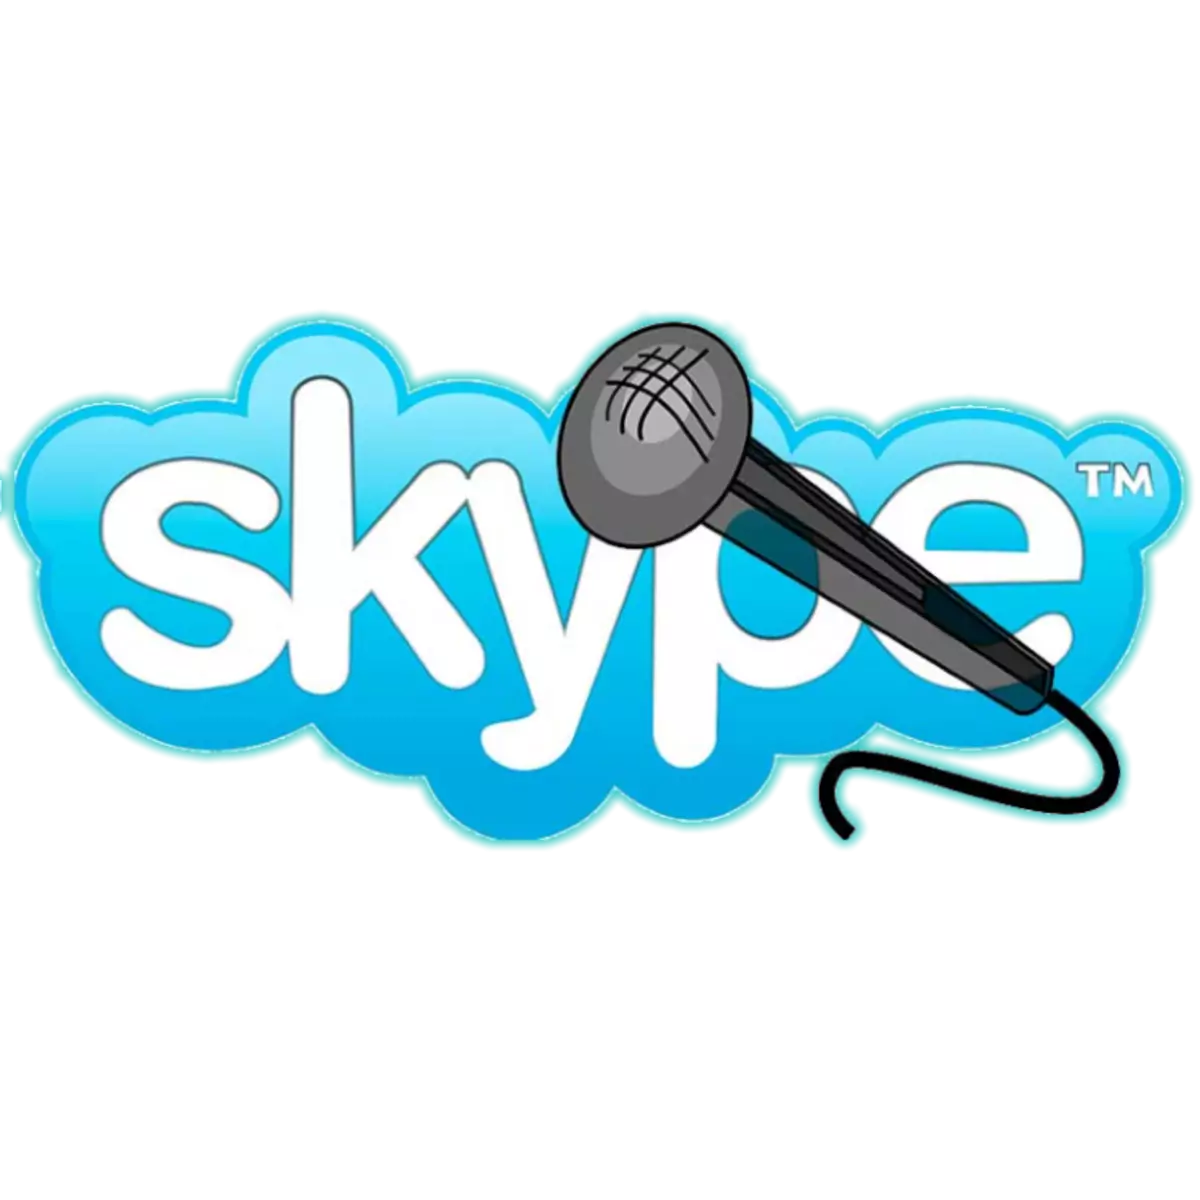 Mengapa mikrofon tidak berfungsi di Skype